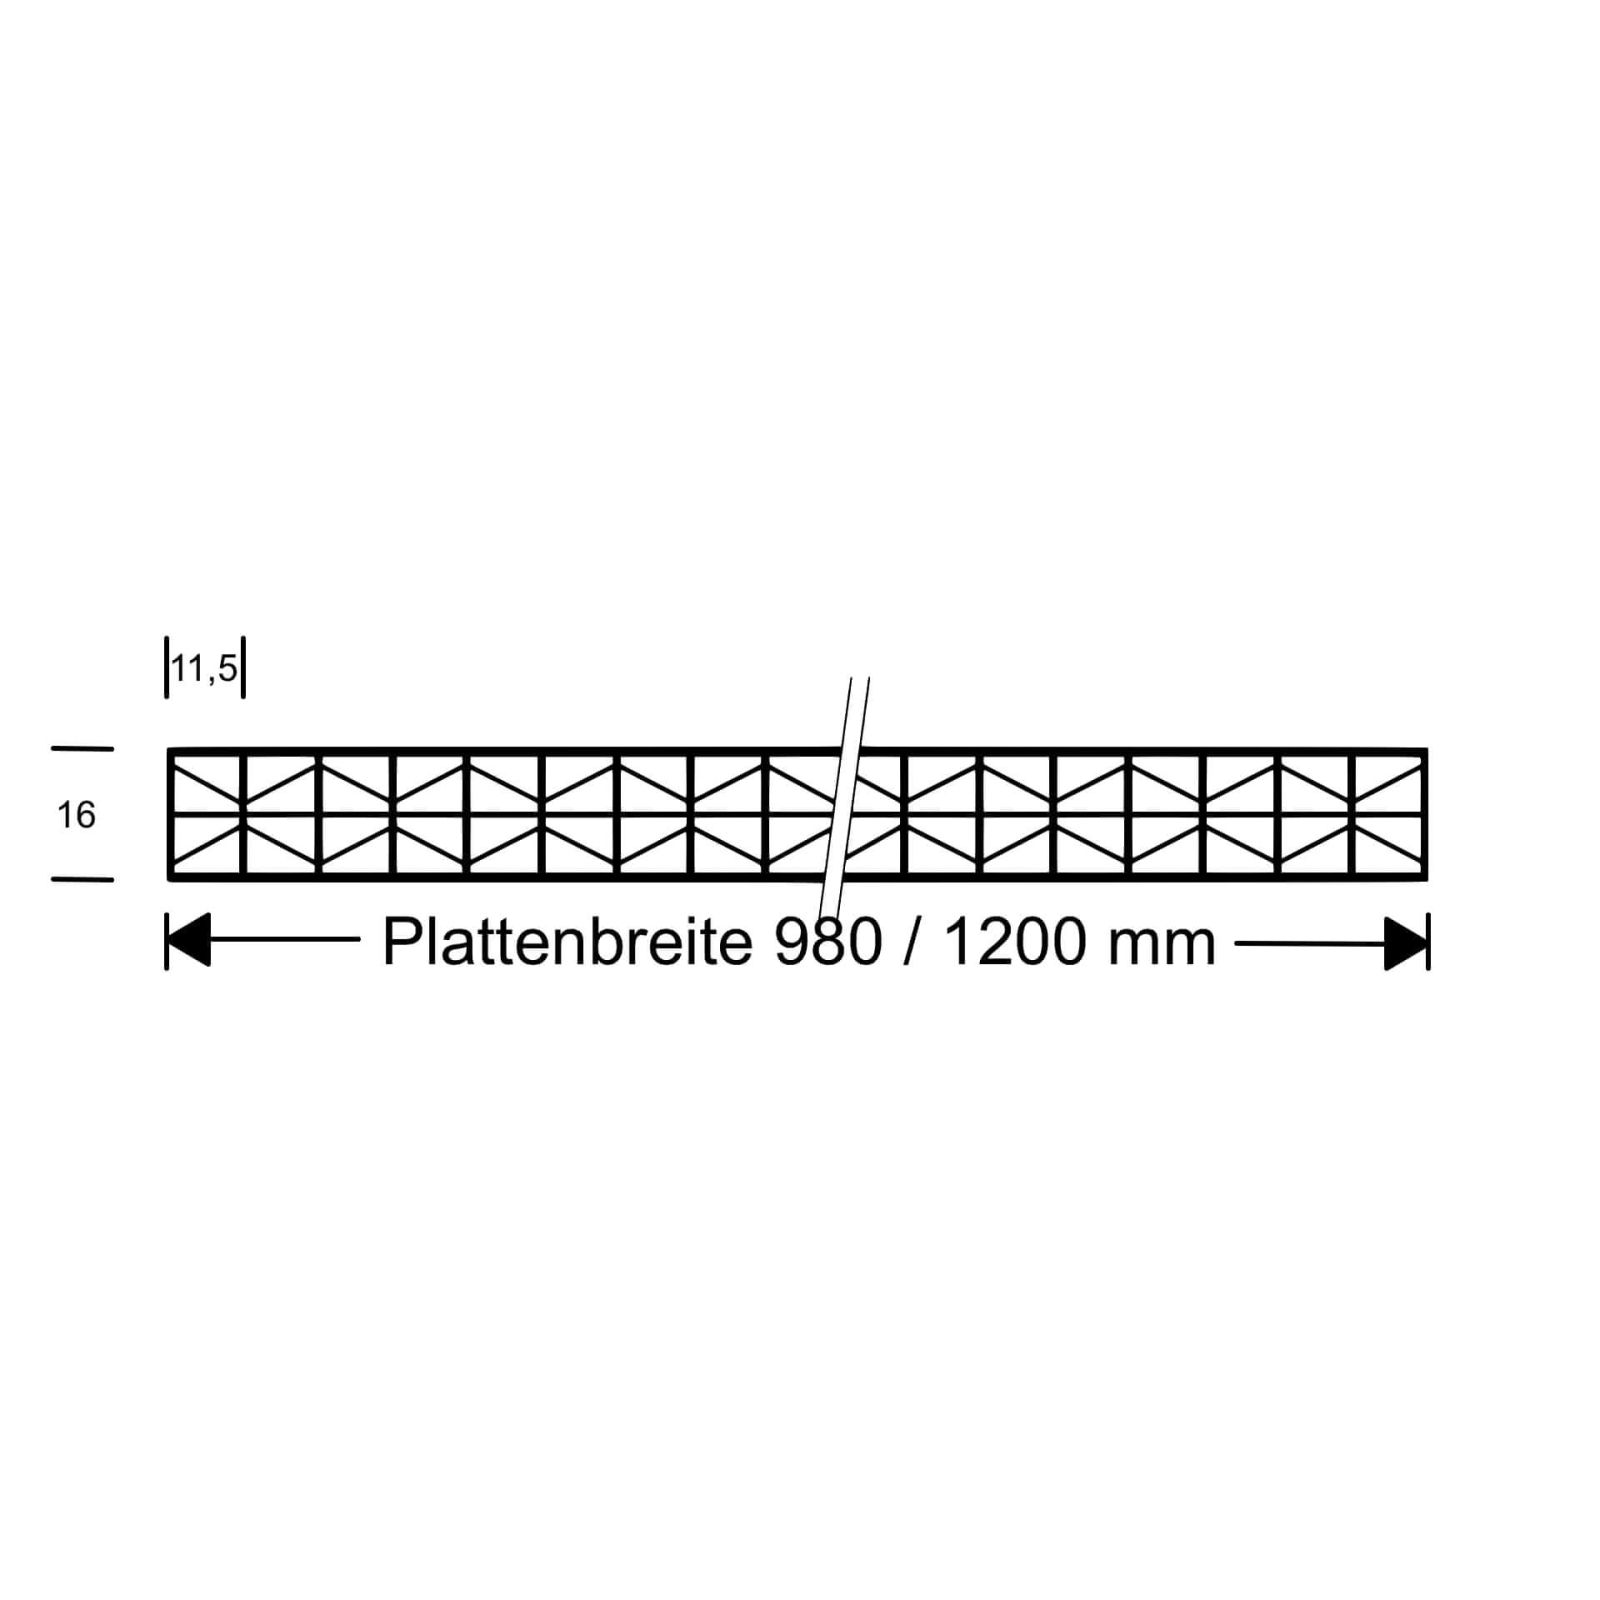 Polycarbonat Stegplatte | 16 mm | Profil ECO | Sparpaket | Plattenbreite 980 mm | Klar | Extra stark | Breite 3,05 m | Länge 2,00 m #10